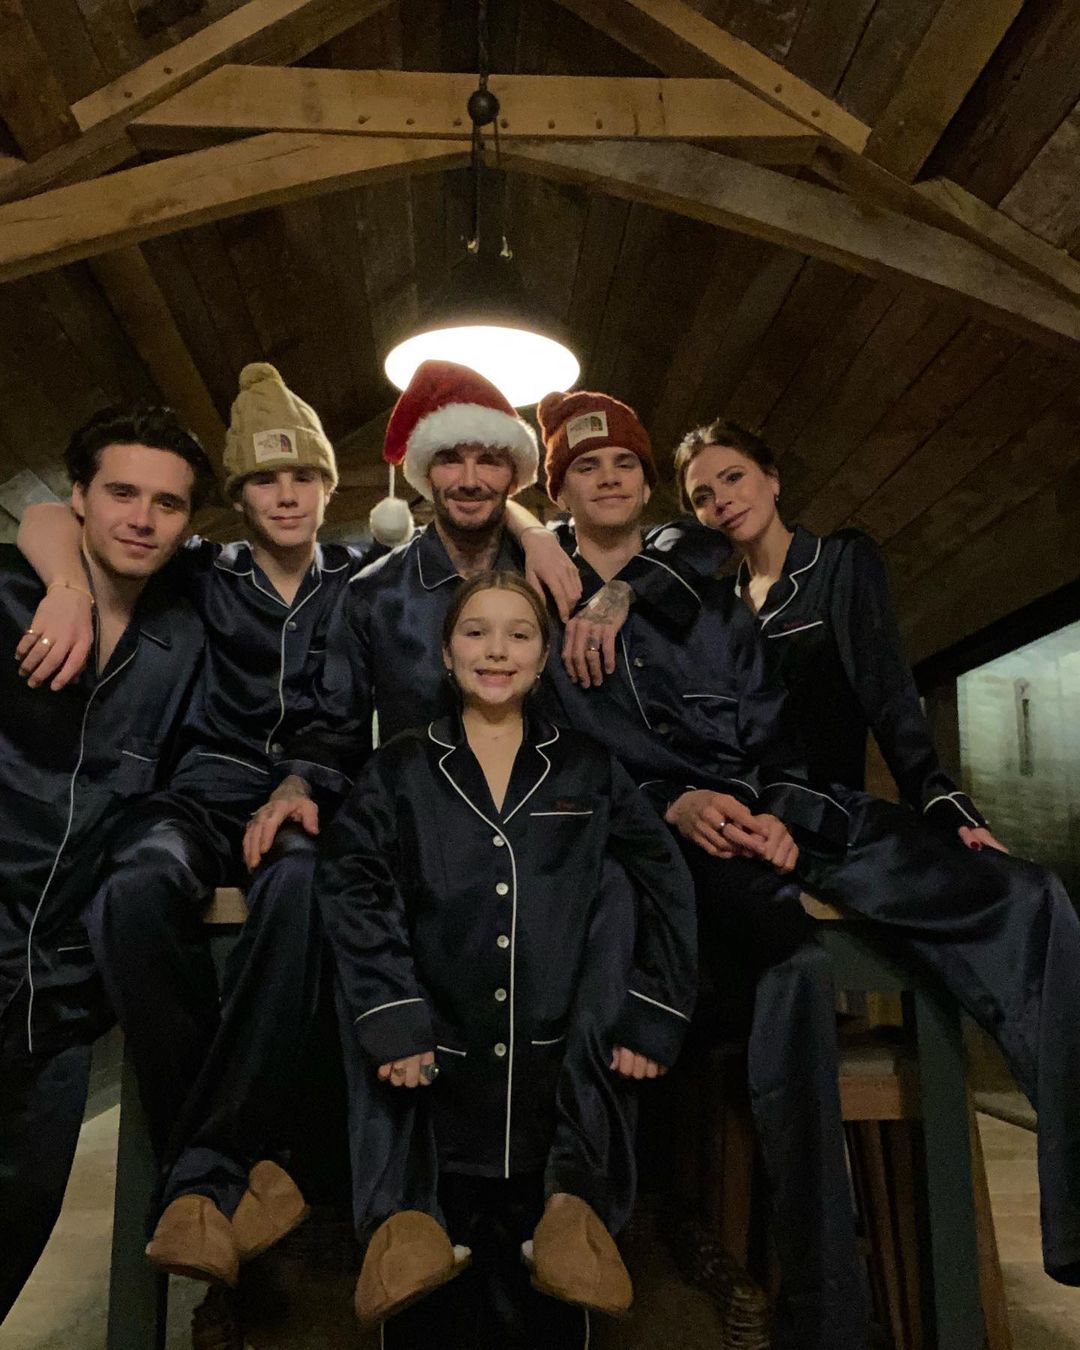 Sau bao sóng gió, cuối cùng gia đình nhà Becks đã có một Giáng sinh an lành bên nhau. Gia đình 5 người lựa chọn pijama màu navy - mềm mại mà lại đúng tính chất 'nhà là nơi để về'